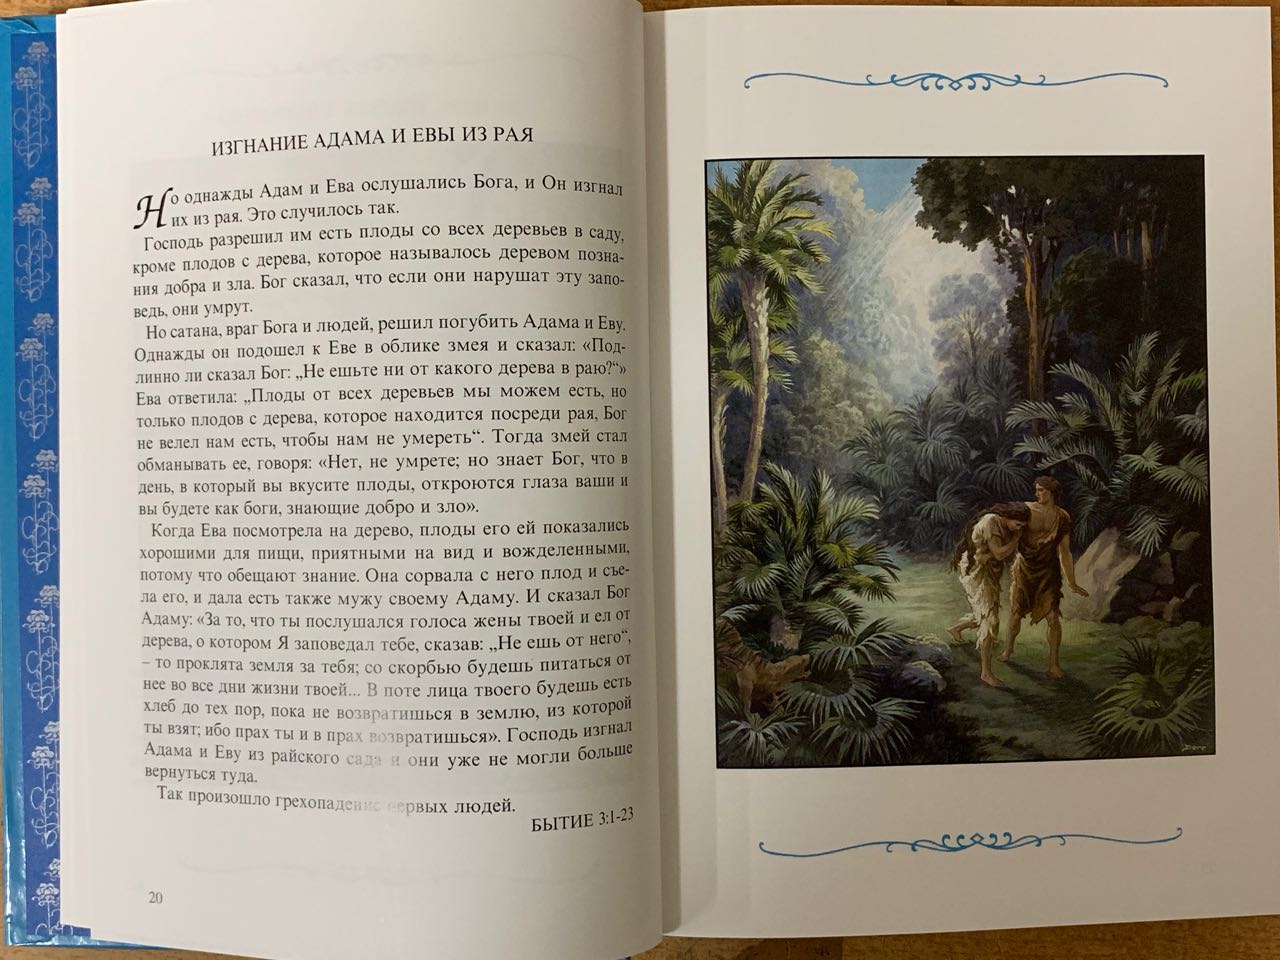 Библия для детей под редакцией Борислова Араповича и Веры Маттелмяки (самое первое классическое издание, Институт перевода Библии) Издание 2002 года